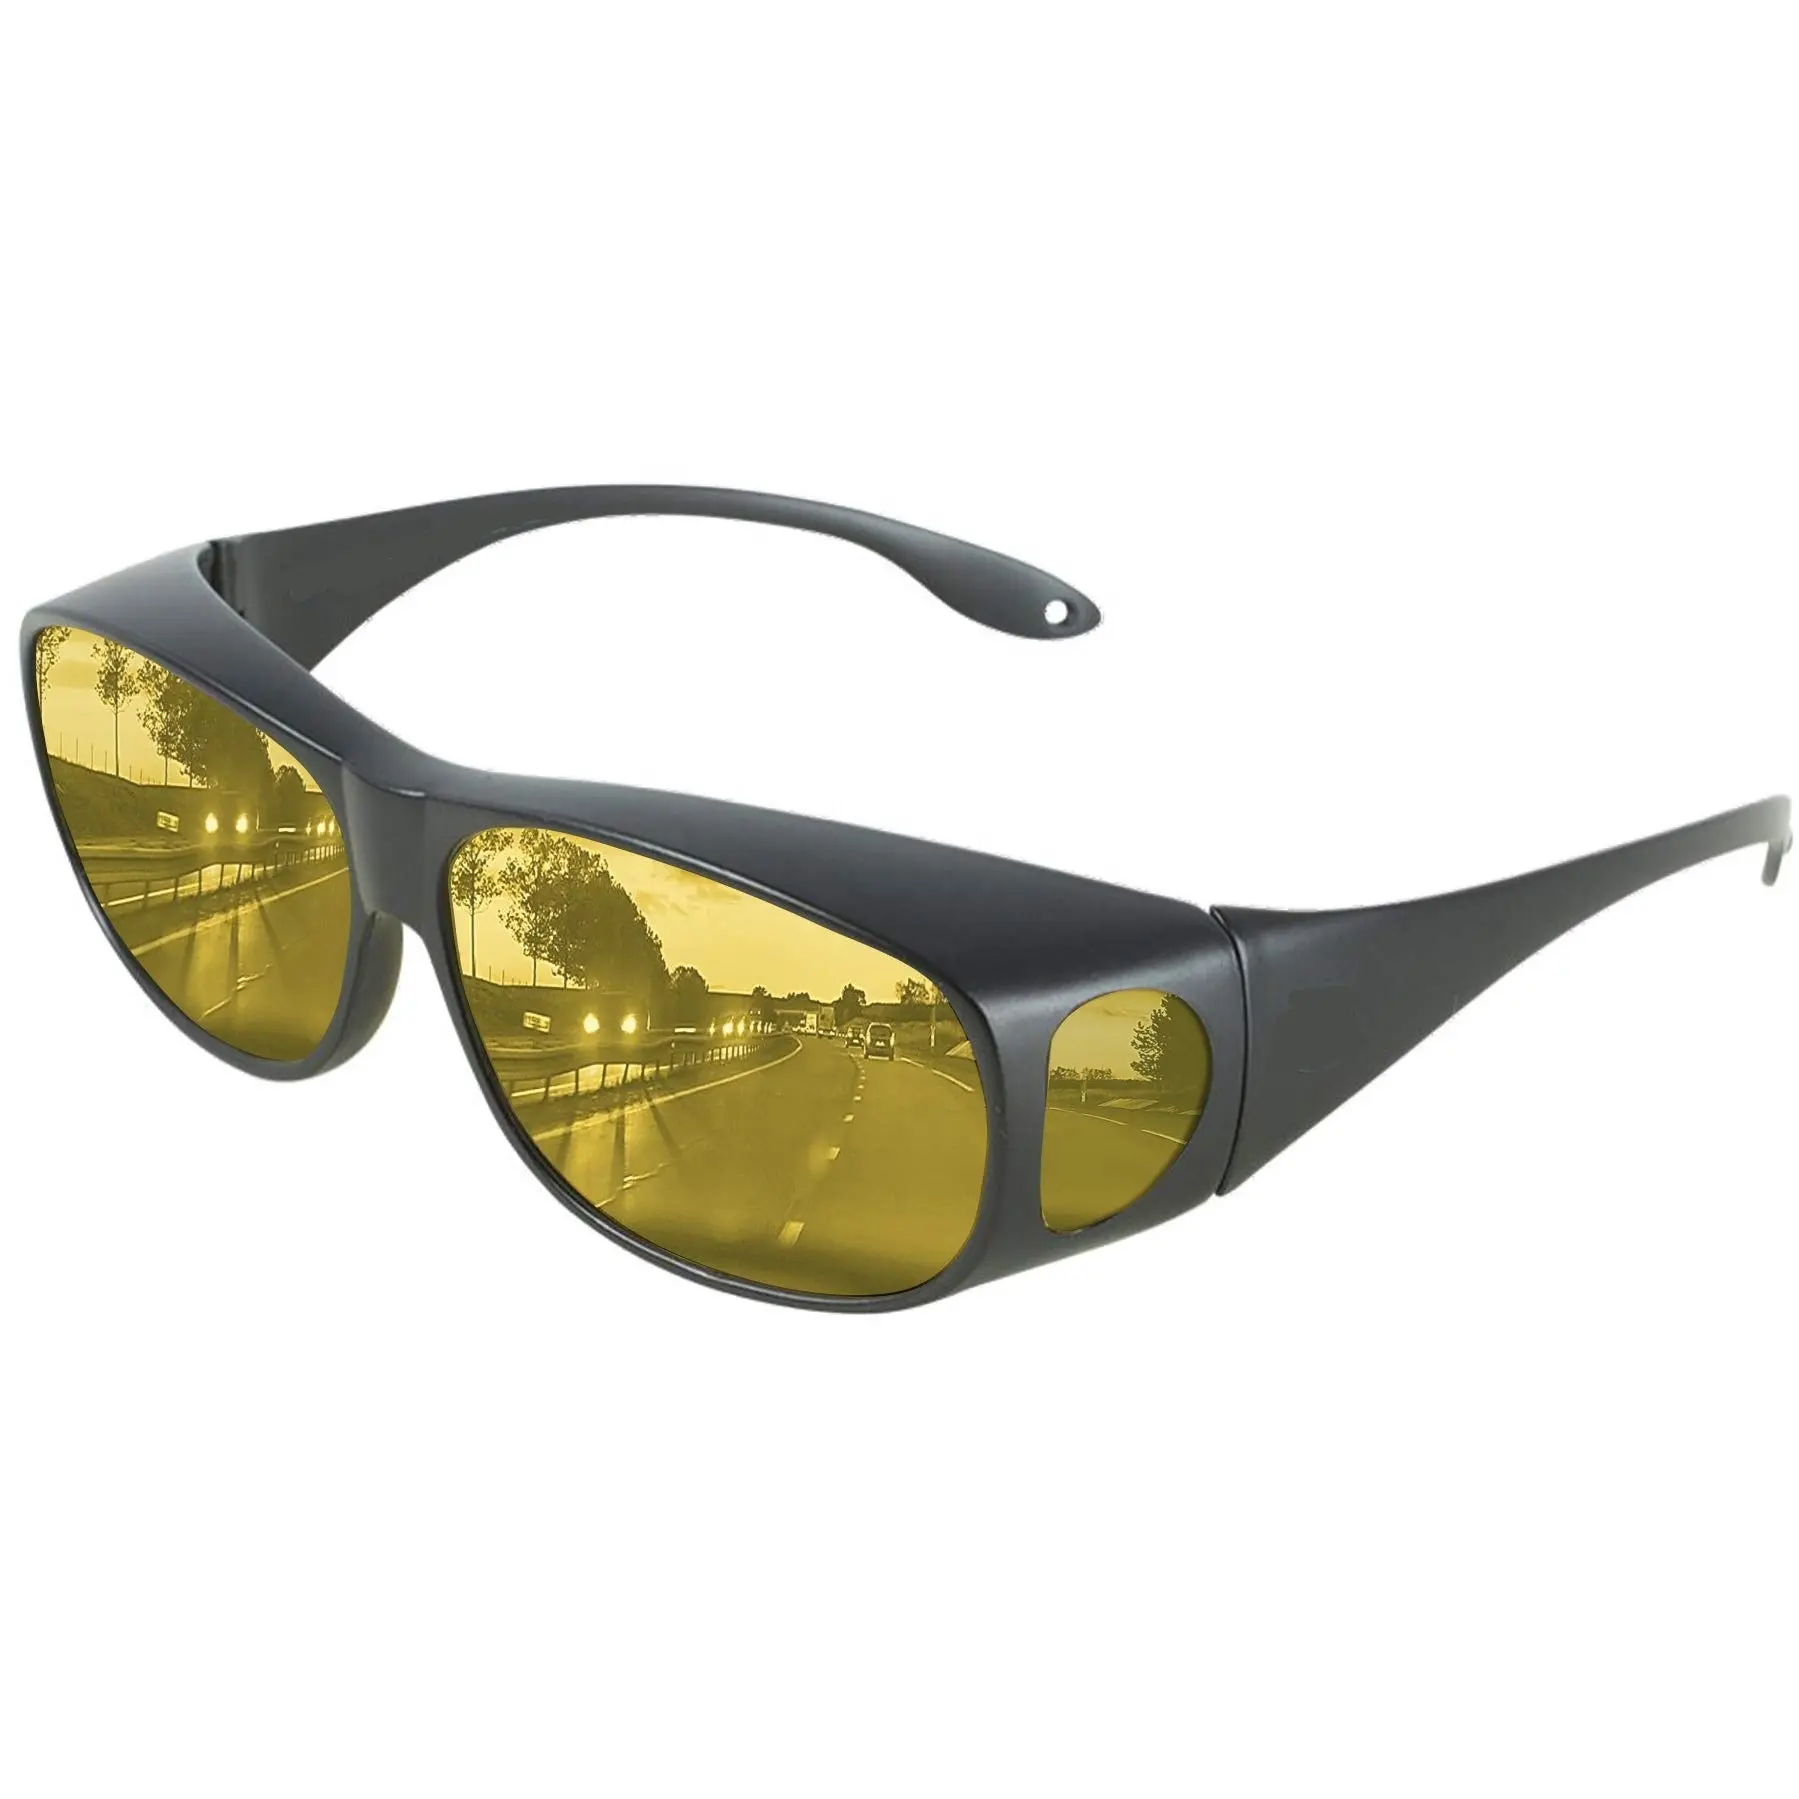 DLL3009 gündüz gece sürüş gözlükleri polarize moda güneş gözlükleri erkekler kadınlar için Anti parlama Wraparounds Fit reçete gözlük